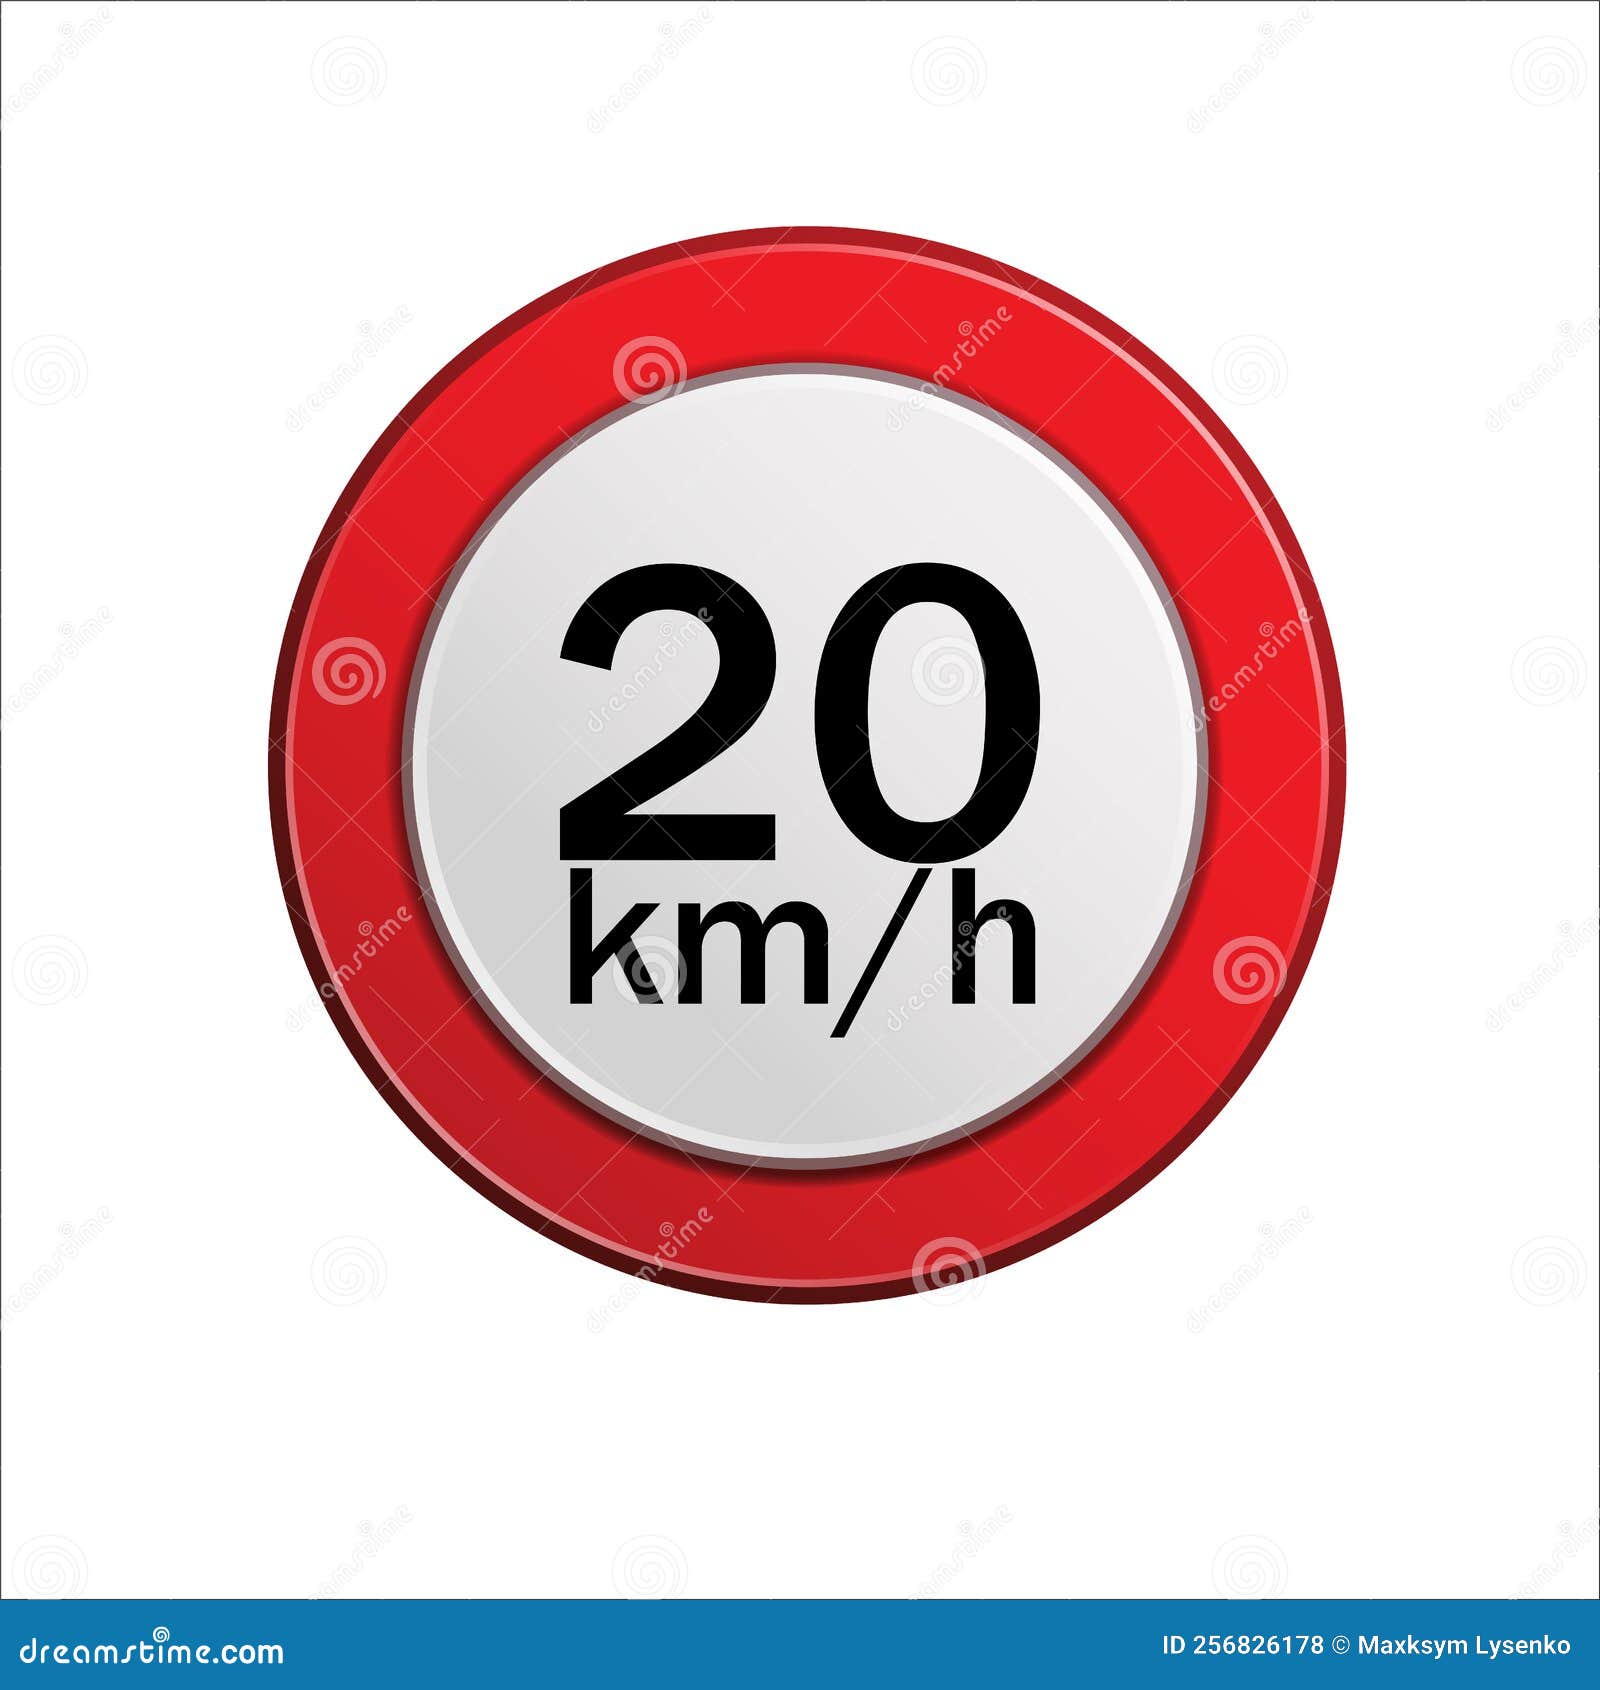 velocidade maxima permitida 20 km h maximum speed limit in portuguese  